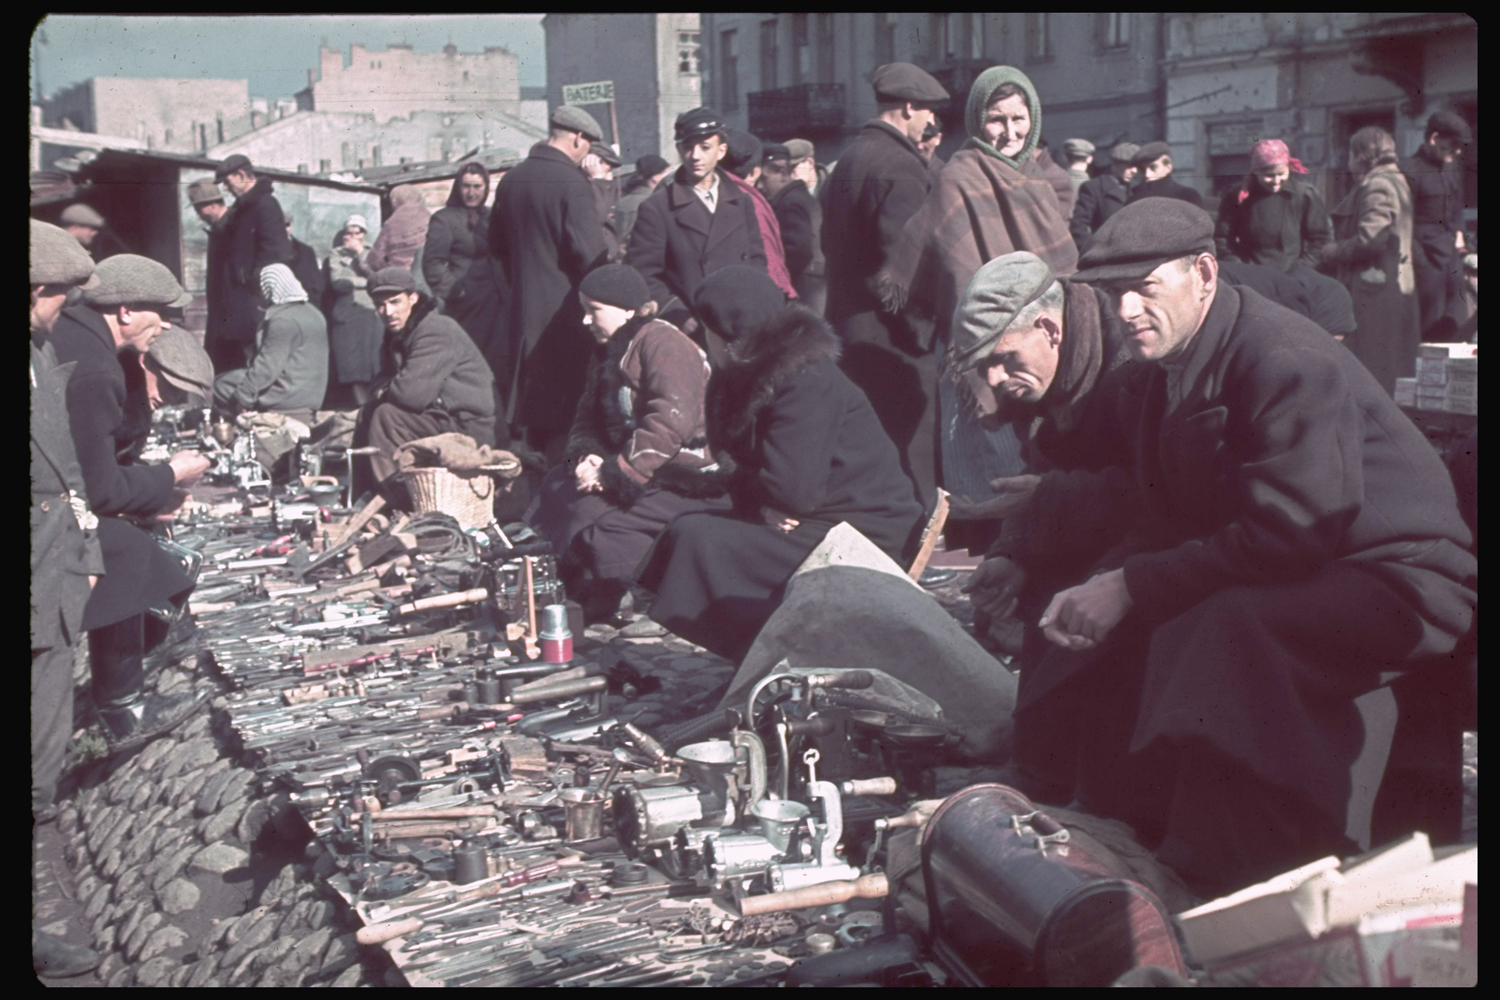 Flea market in post-invasion Warsaw Ghetto, 1940.